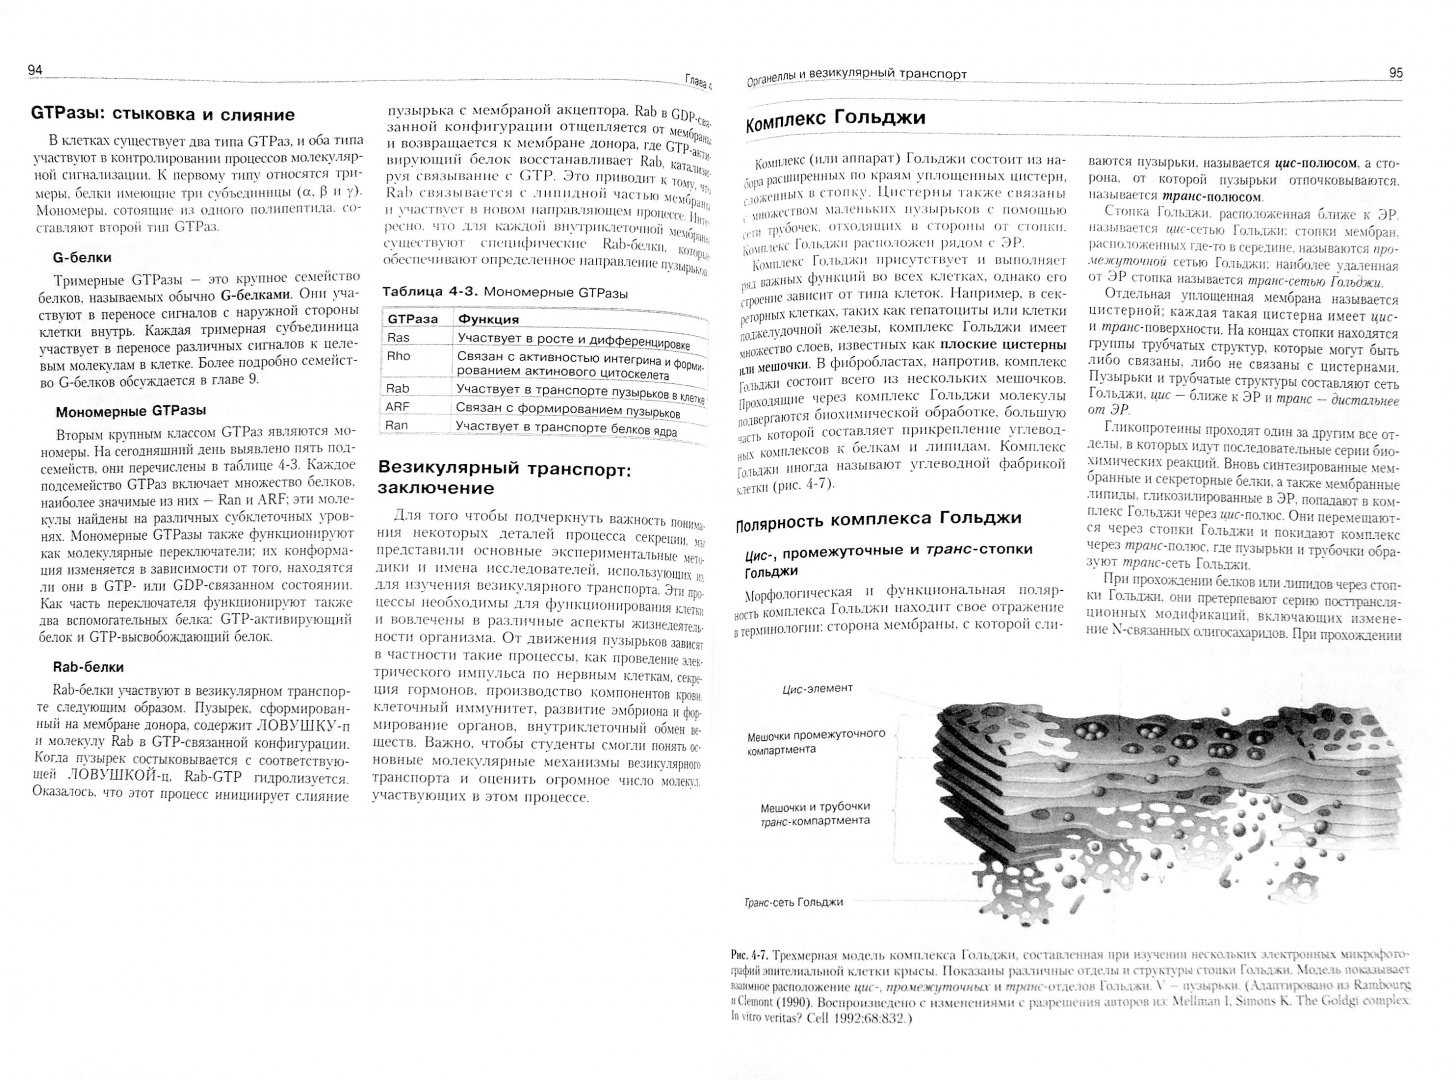 Иллюстрация 1 из 8 для Молекулярная биология клетки. Руководство для врачей - Фаллер, Шилдс | Лабиринт - книги. Источник: Лабиринт